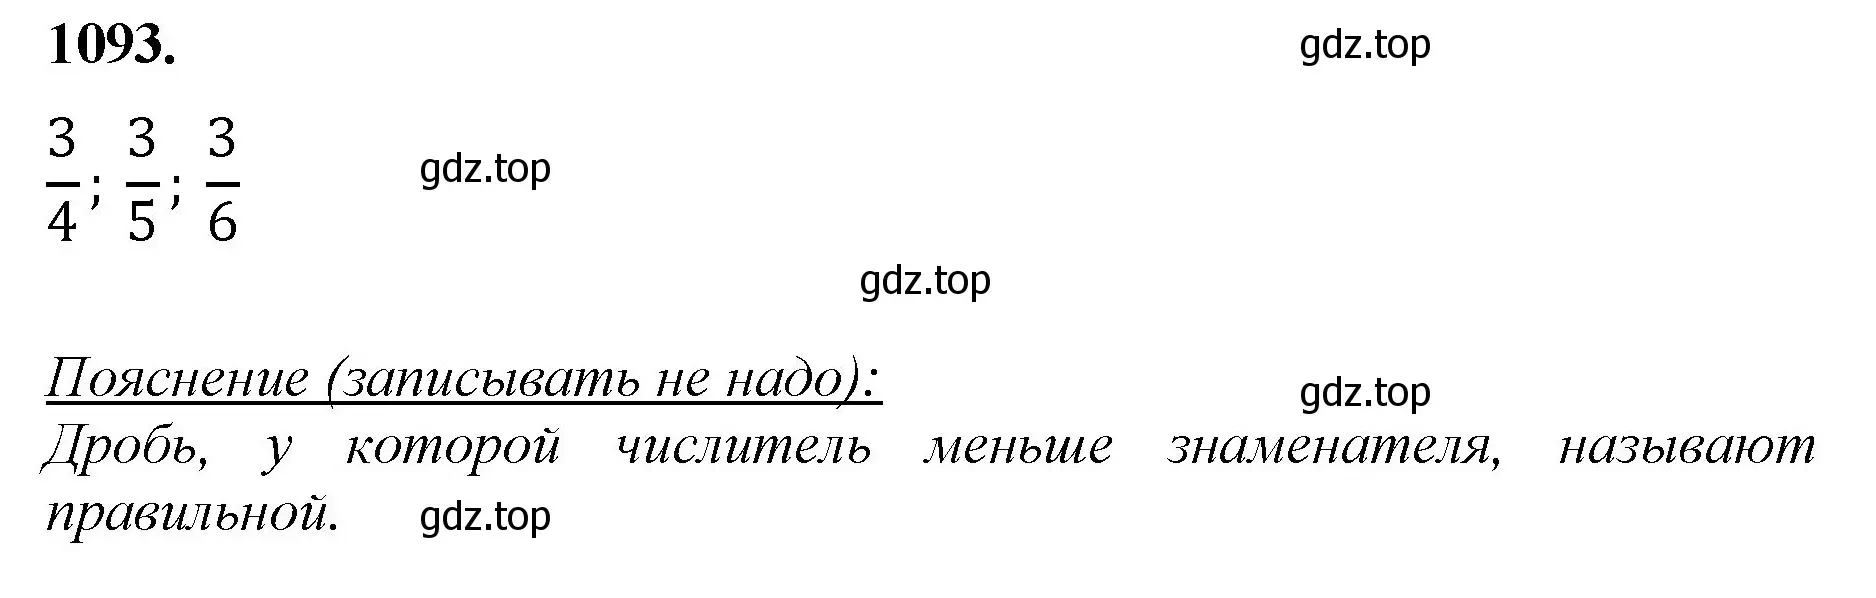 Решение номер 1093 (страница 245) гдз по математике 5 класс Мерзляк, Полонский, учебник